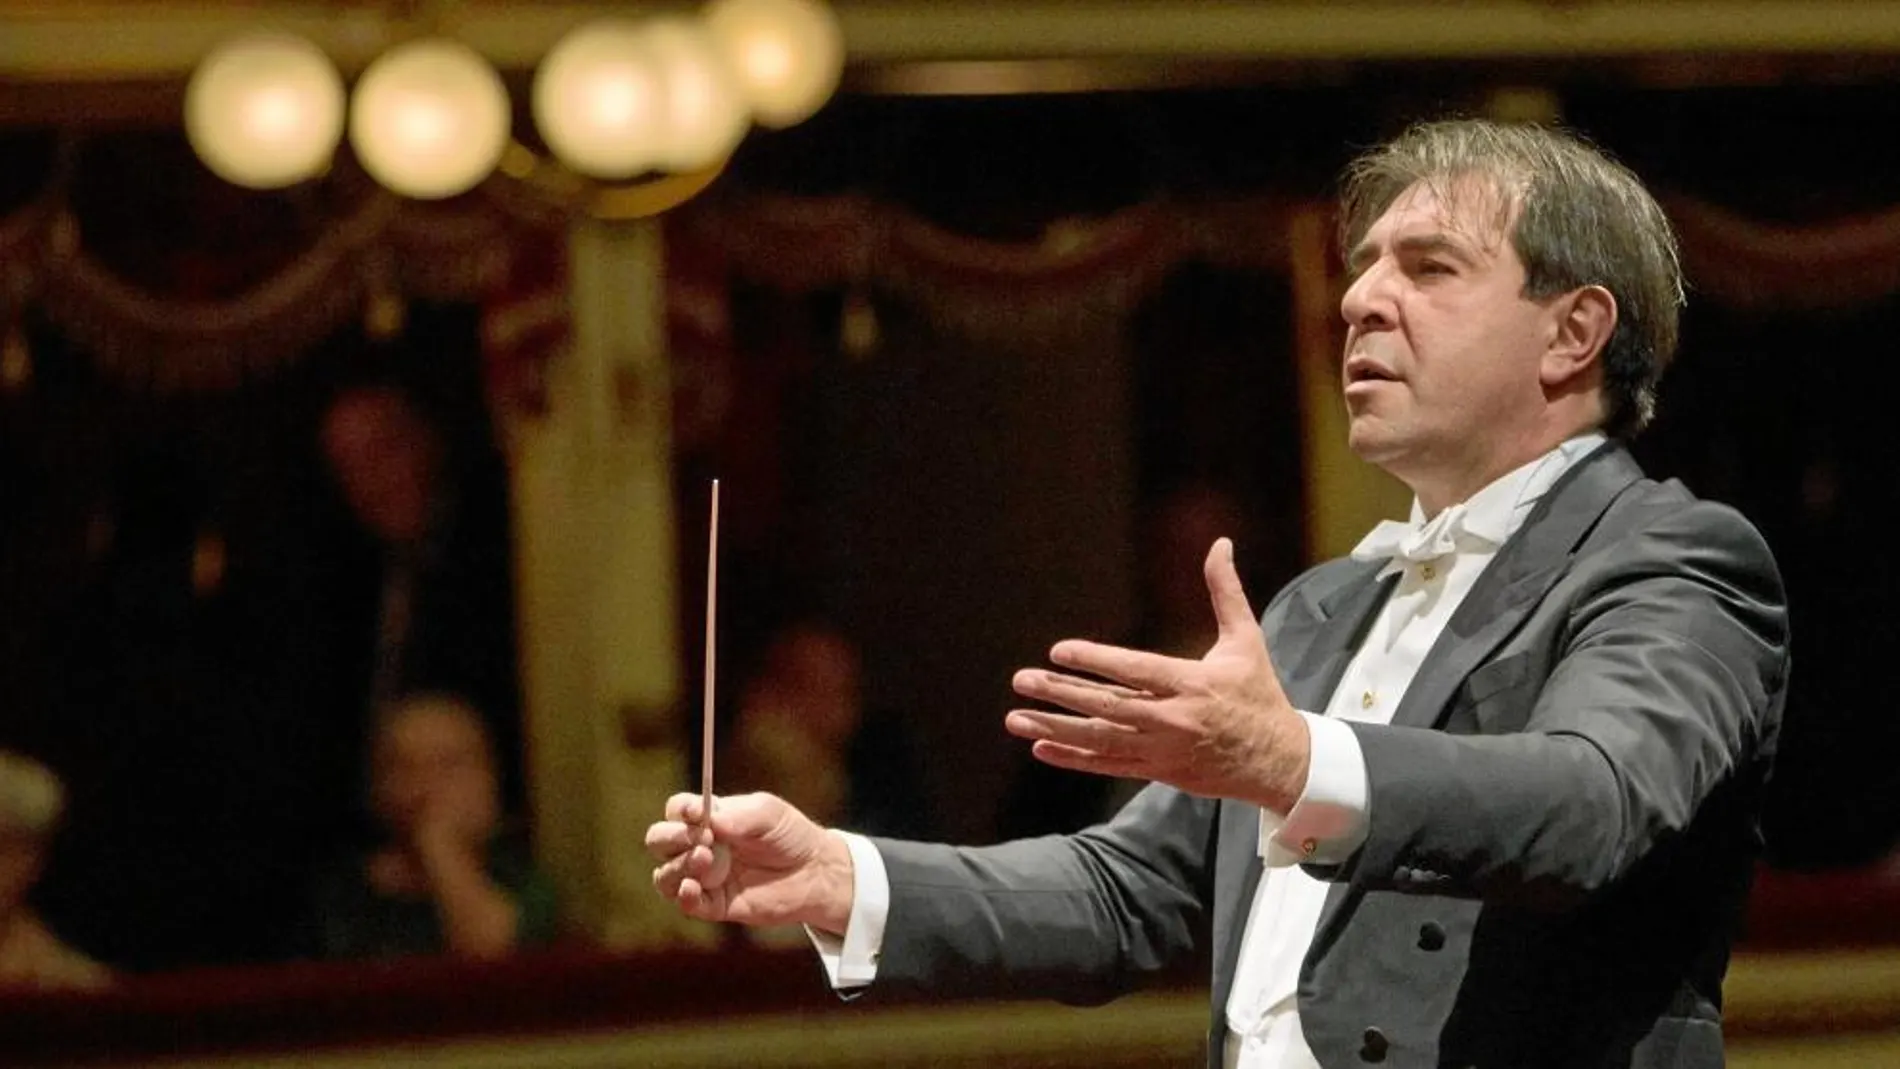 El maestro Daniele Gatti es uno de los más prestigiosos y reconocidos directores de orquesta